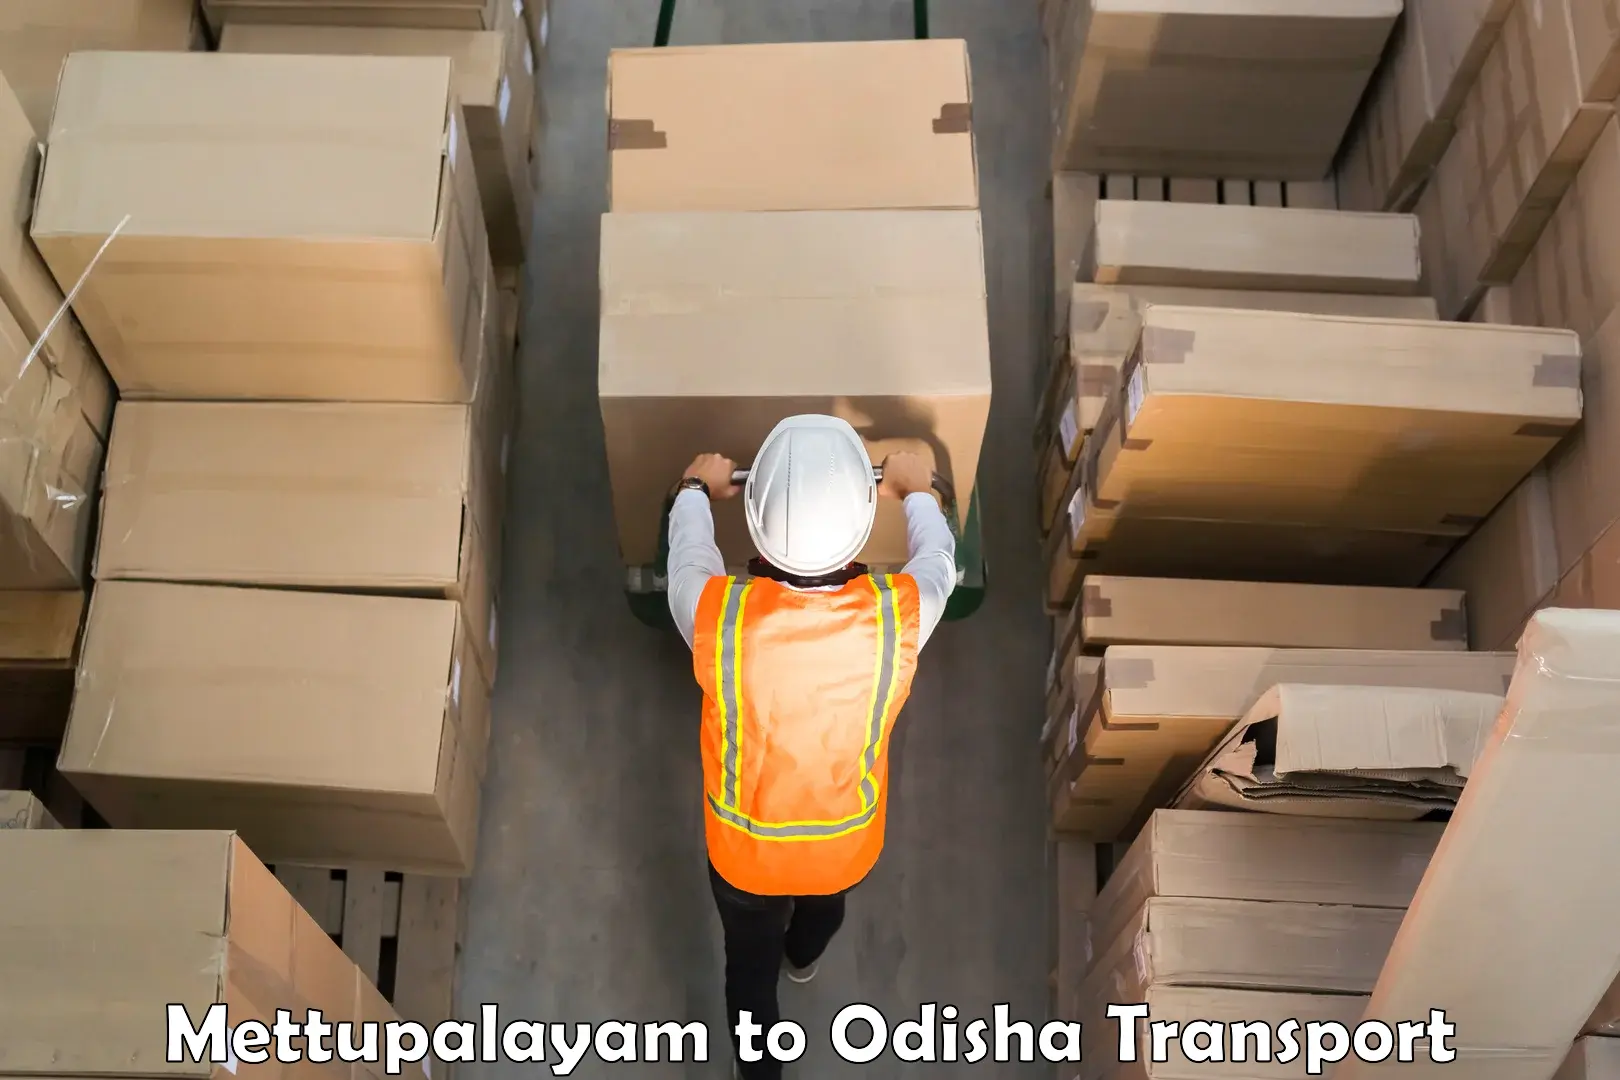 Nearby transport service Mettupalayam to Odisha